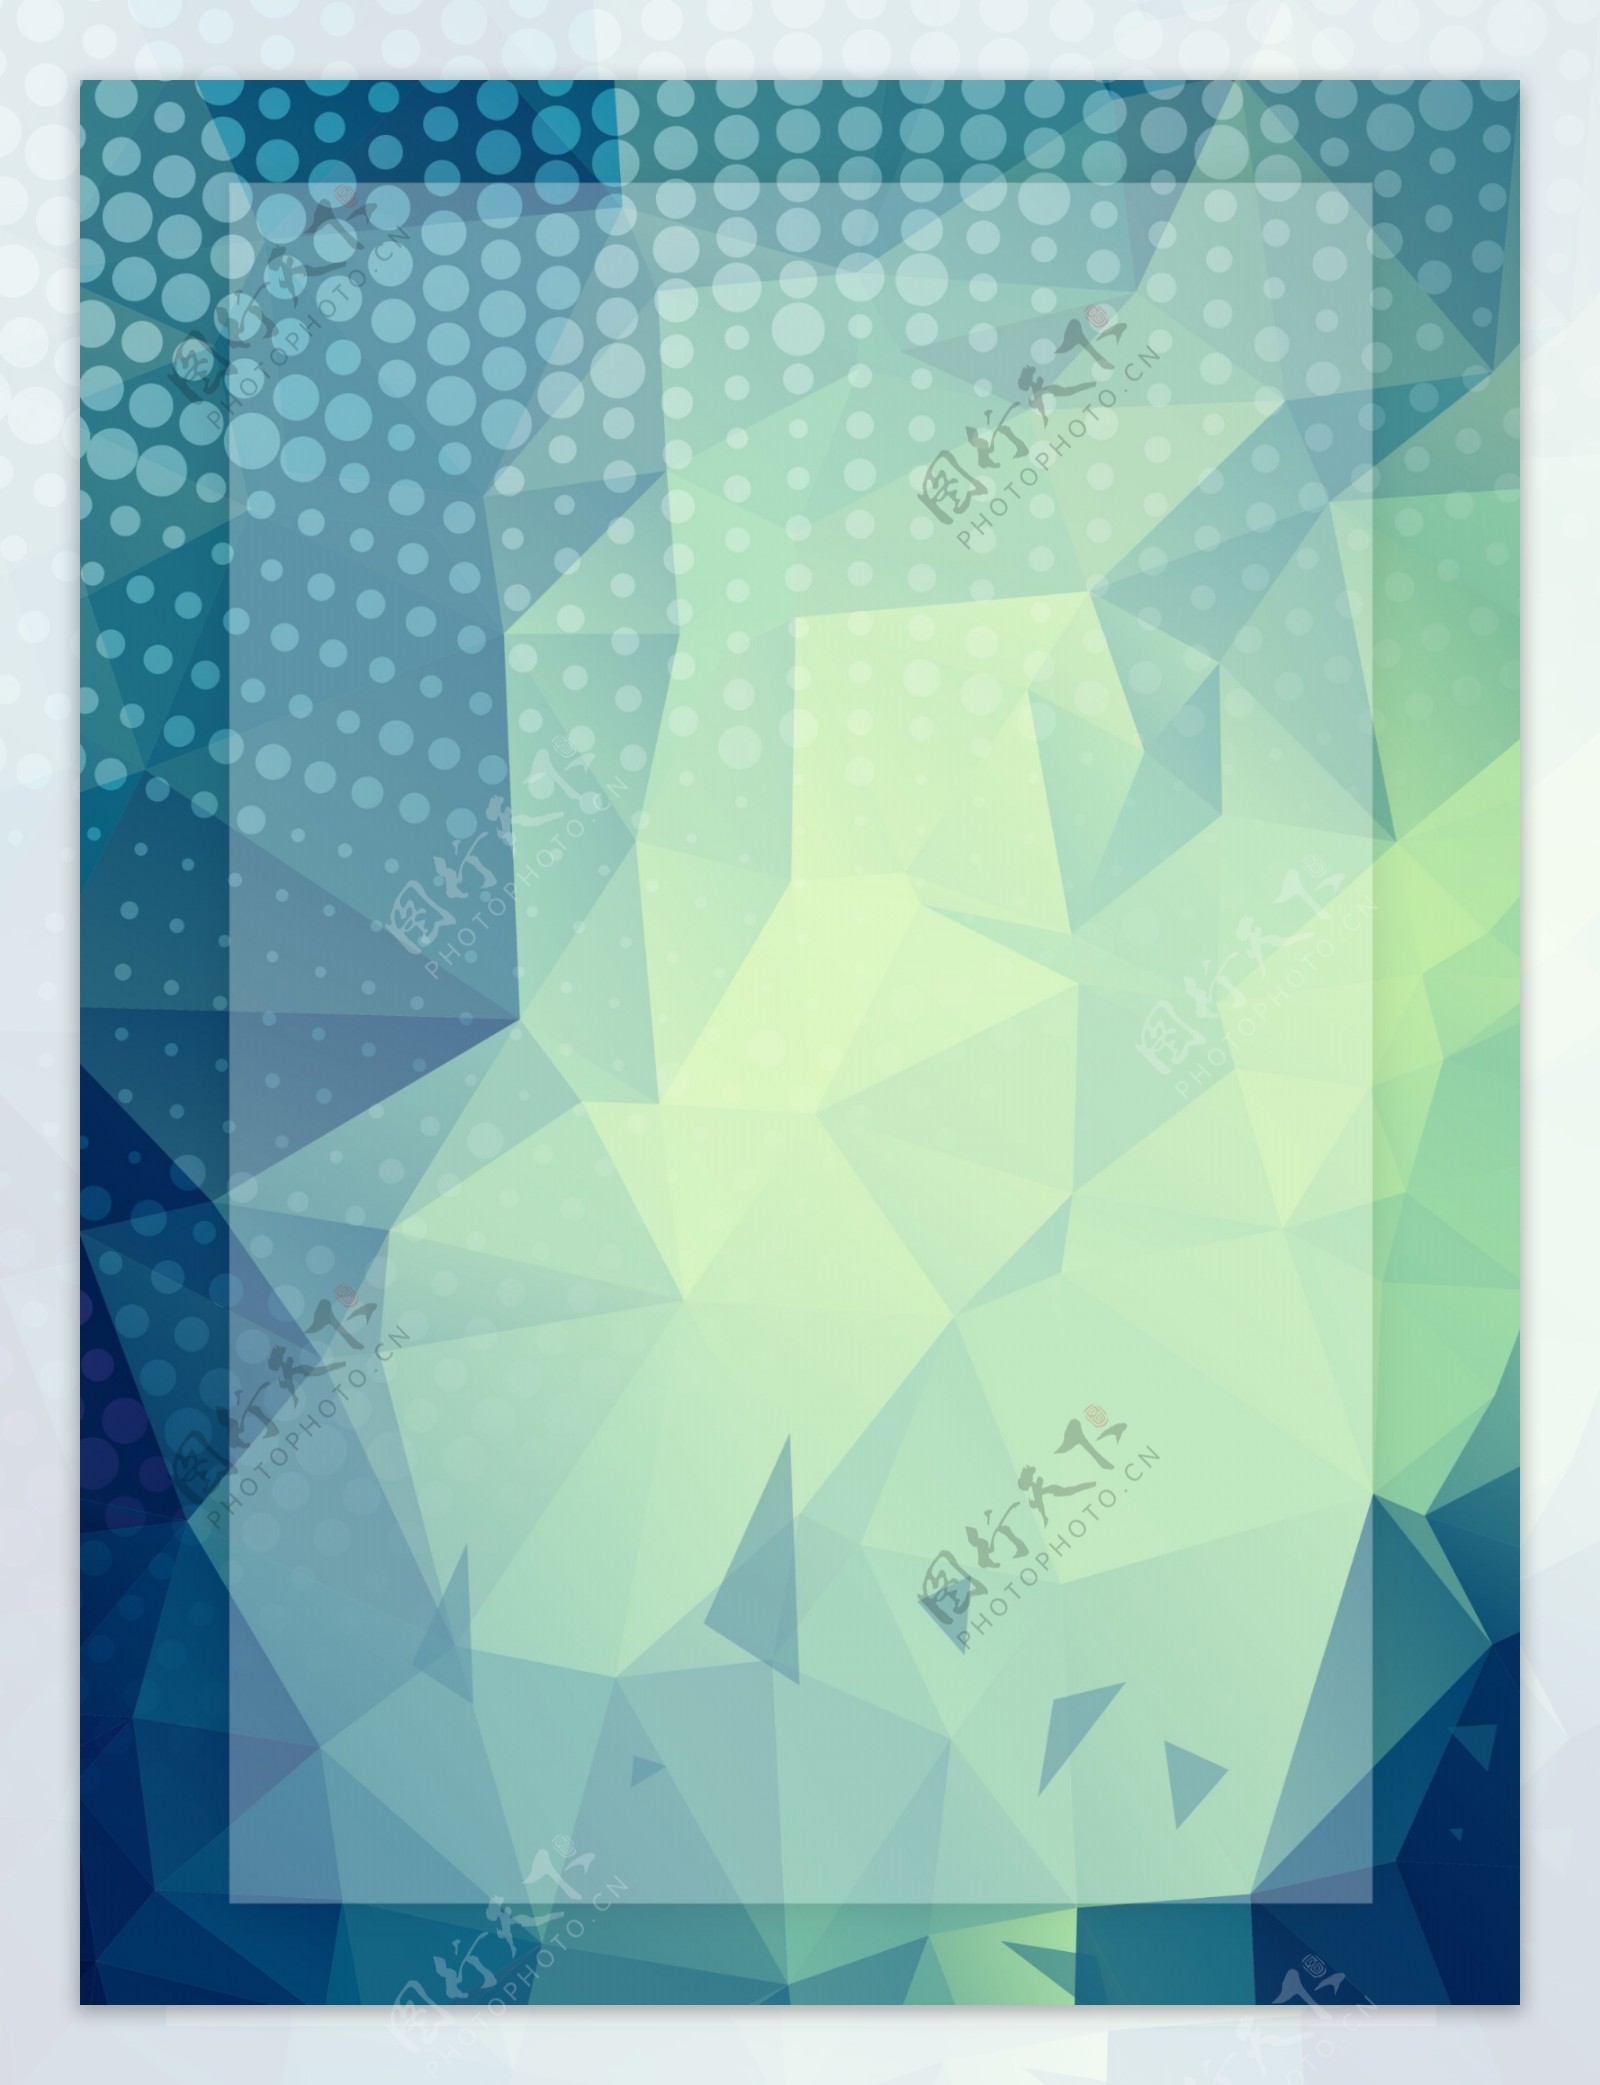 简约蓝色科技创意抽象微立体几何背景素材